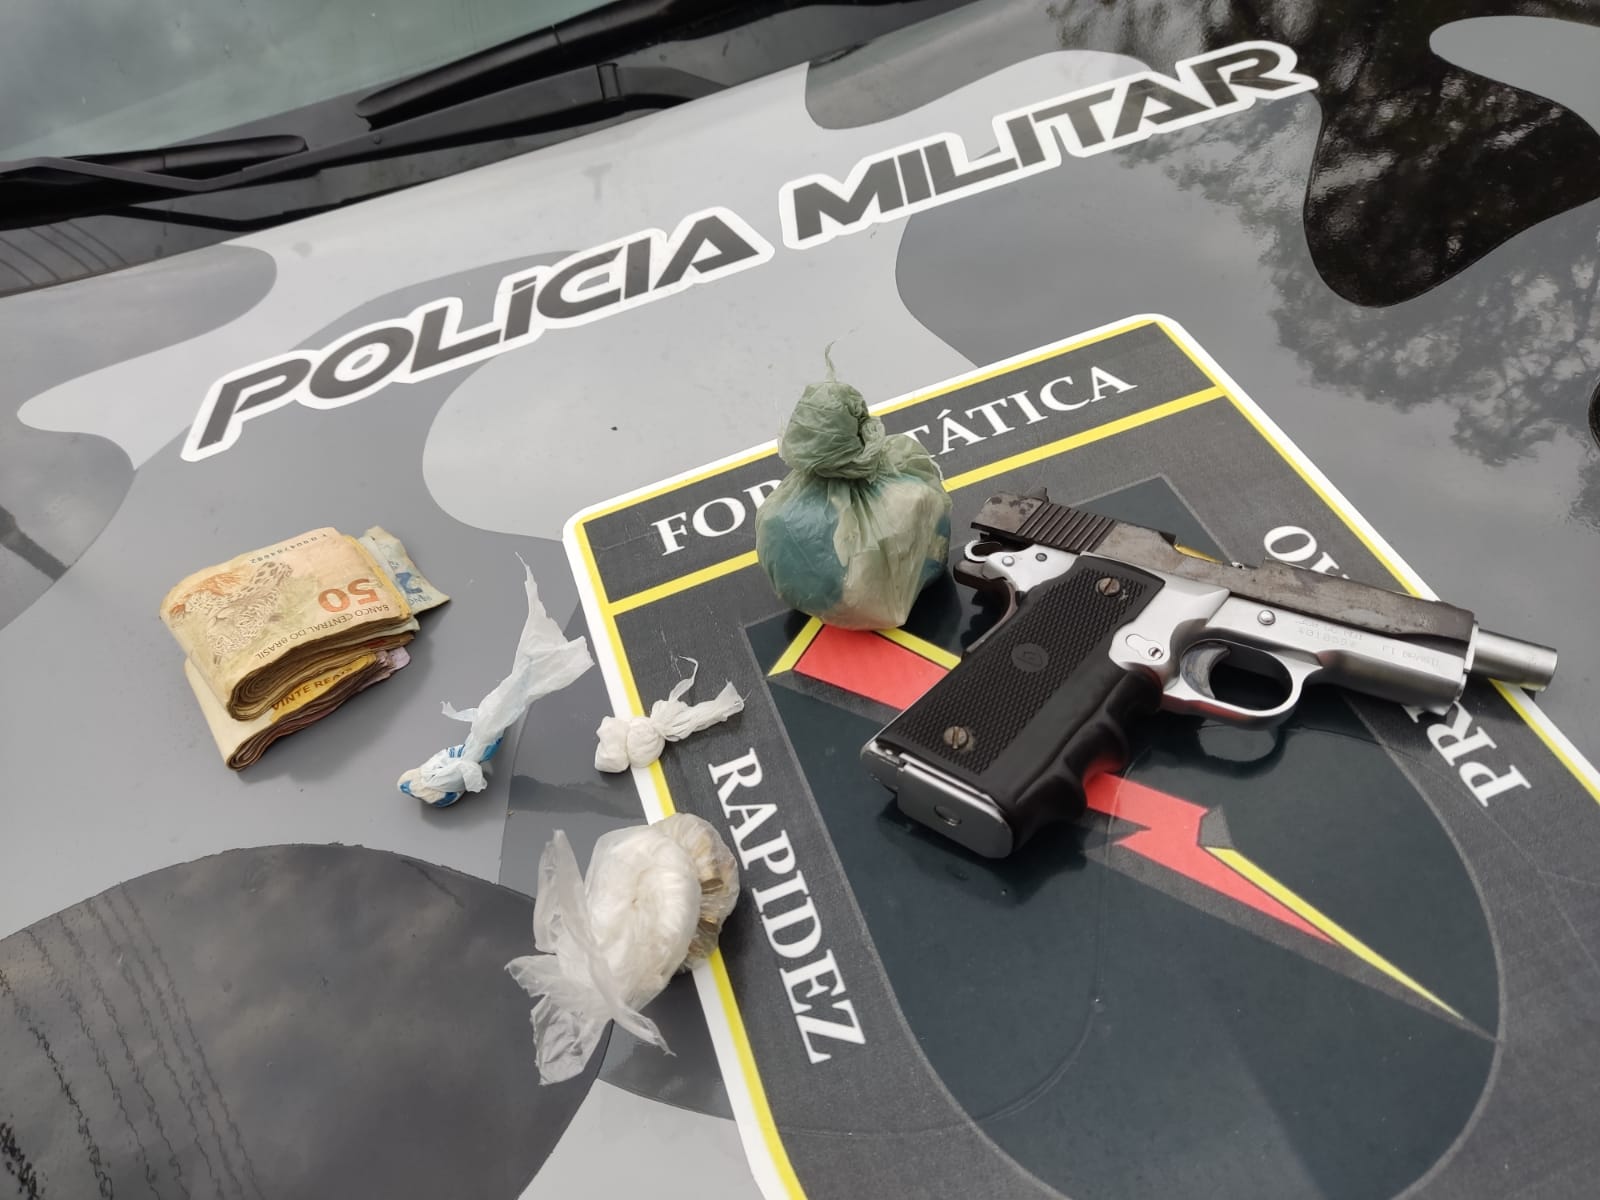 Arma de foto e drogas foi encontrado com a vítima (Foto: Divulgação)